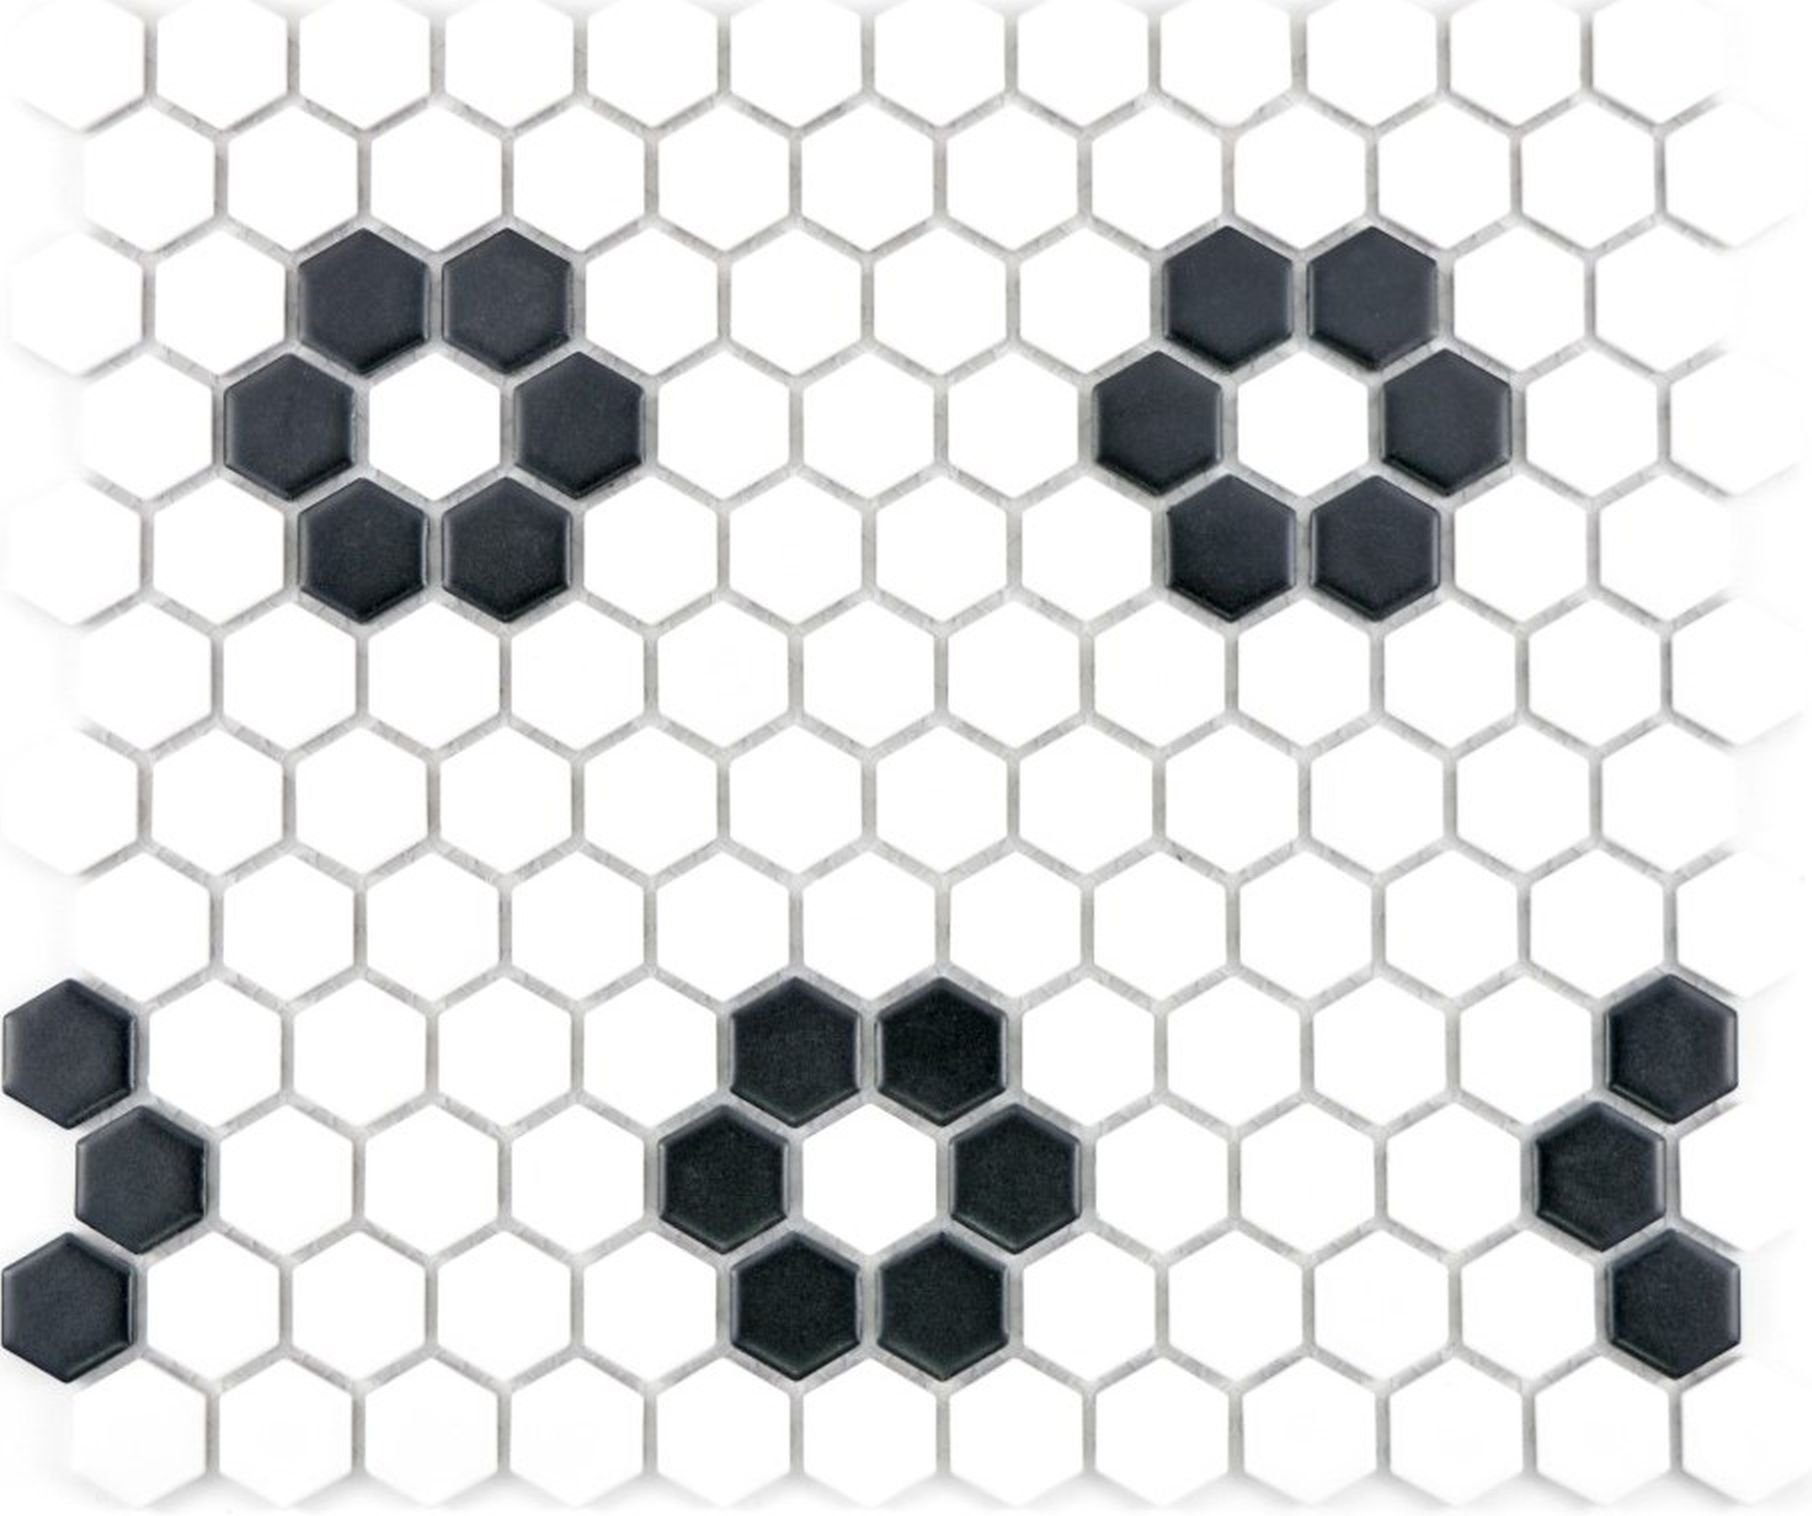 Mosani Mosaikfliesen Hexagonale Sechseck Mosaik Fliese Keramik schwarz weiß matt Küche WC